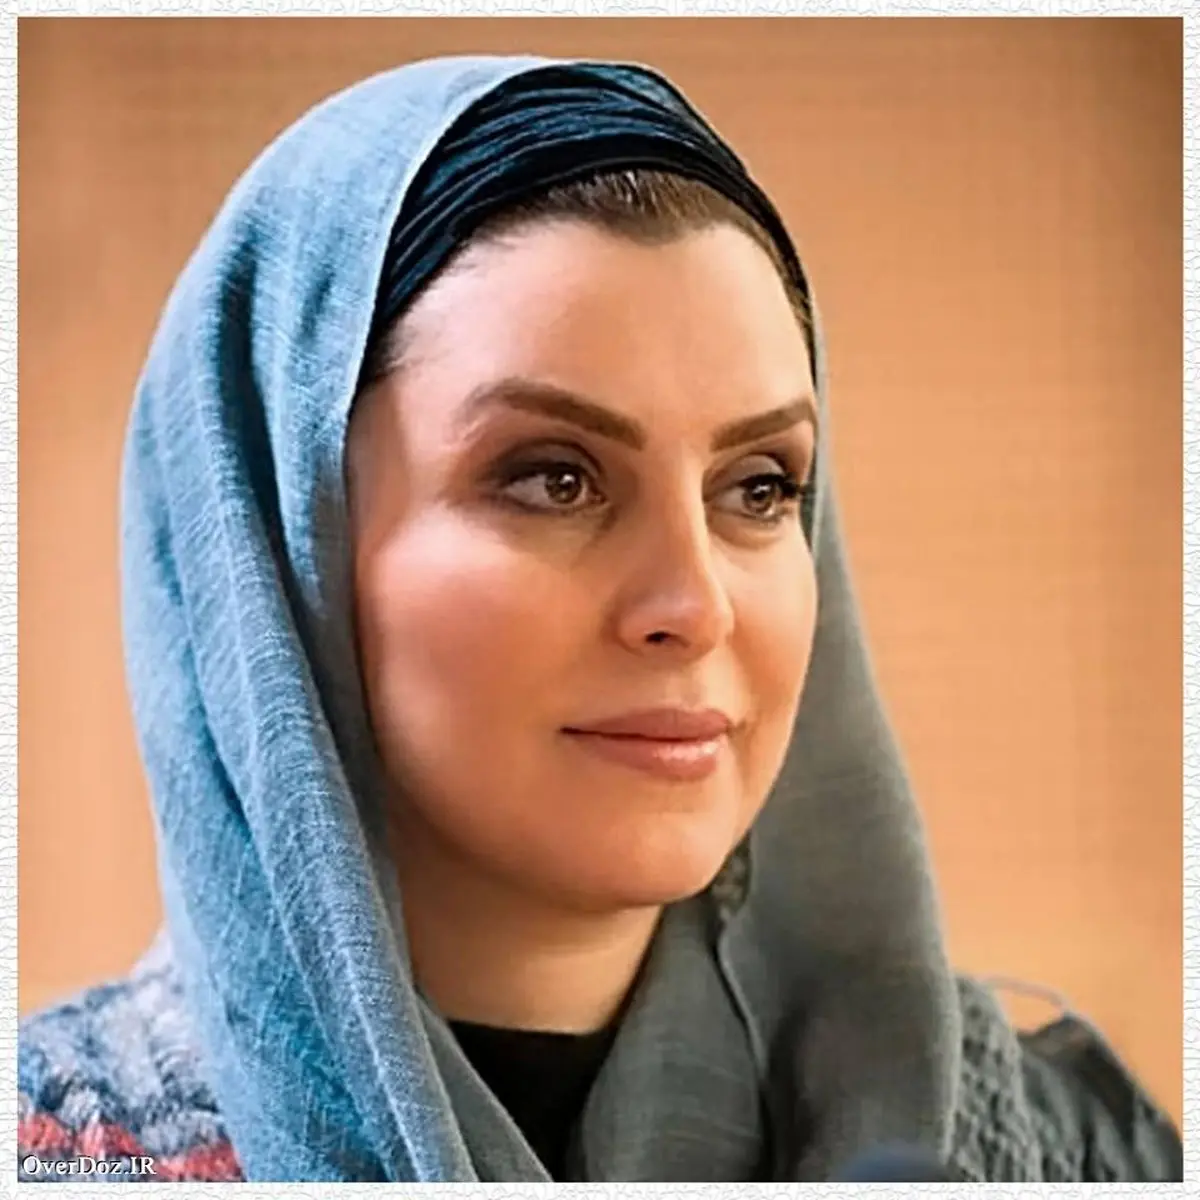 ظاهر ماه چهره خلیلی در جشنواره فیلم فجر (عکس)